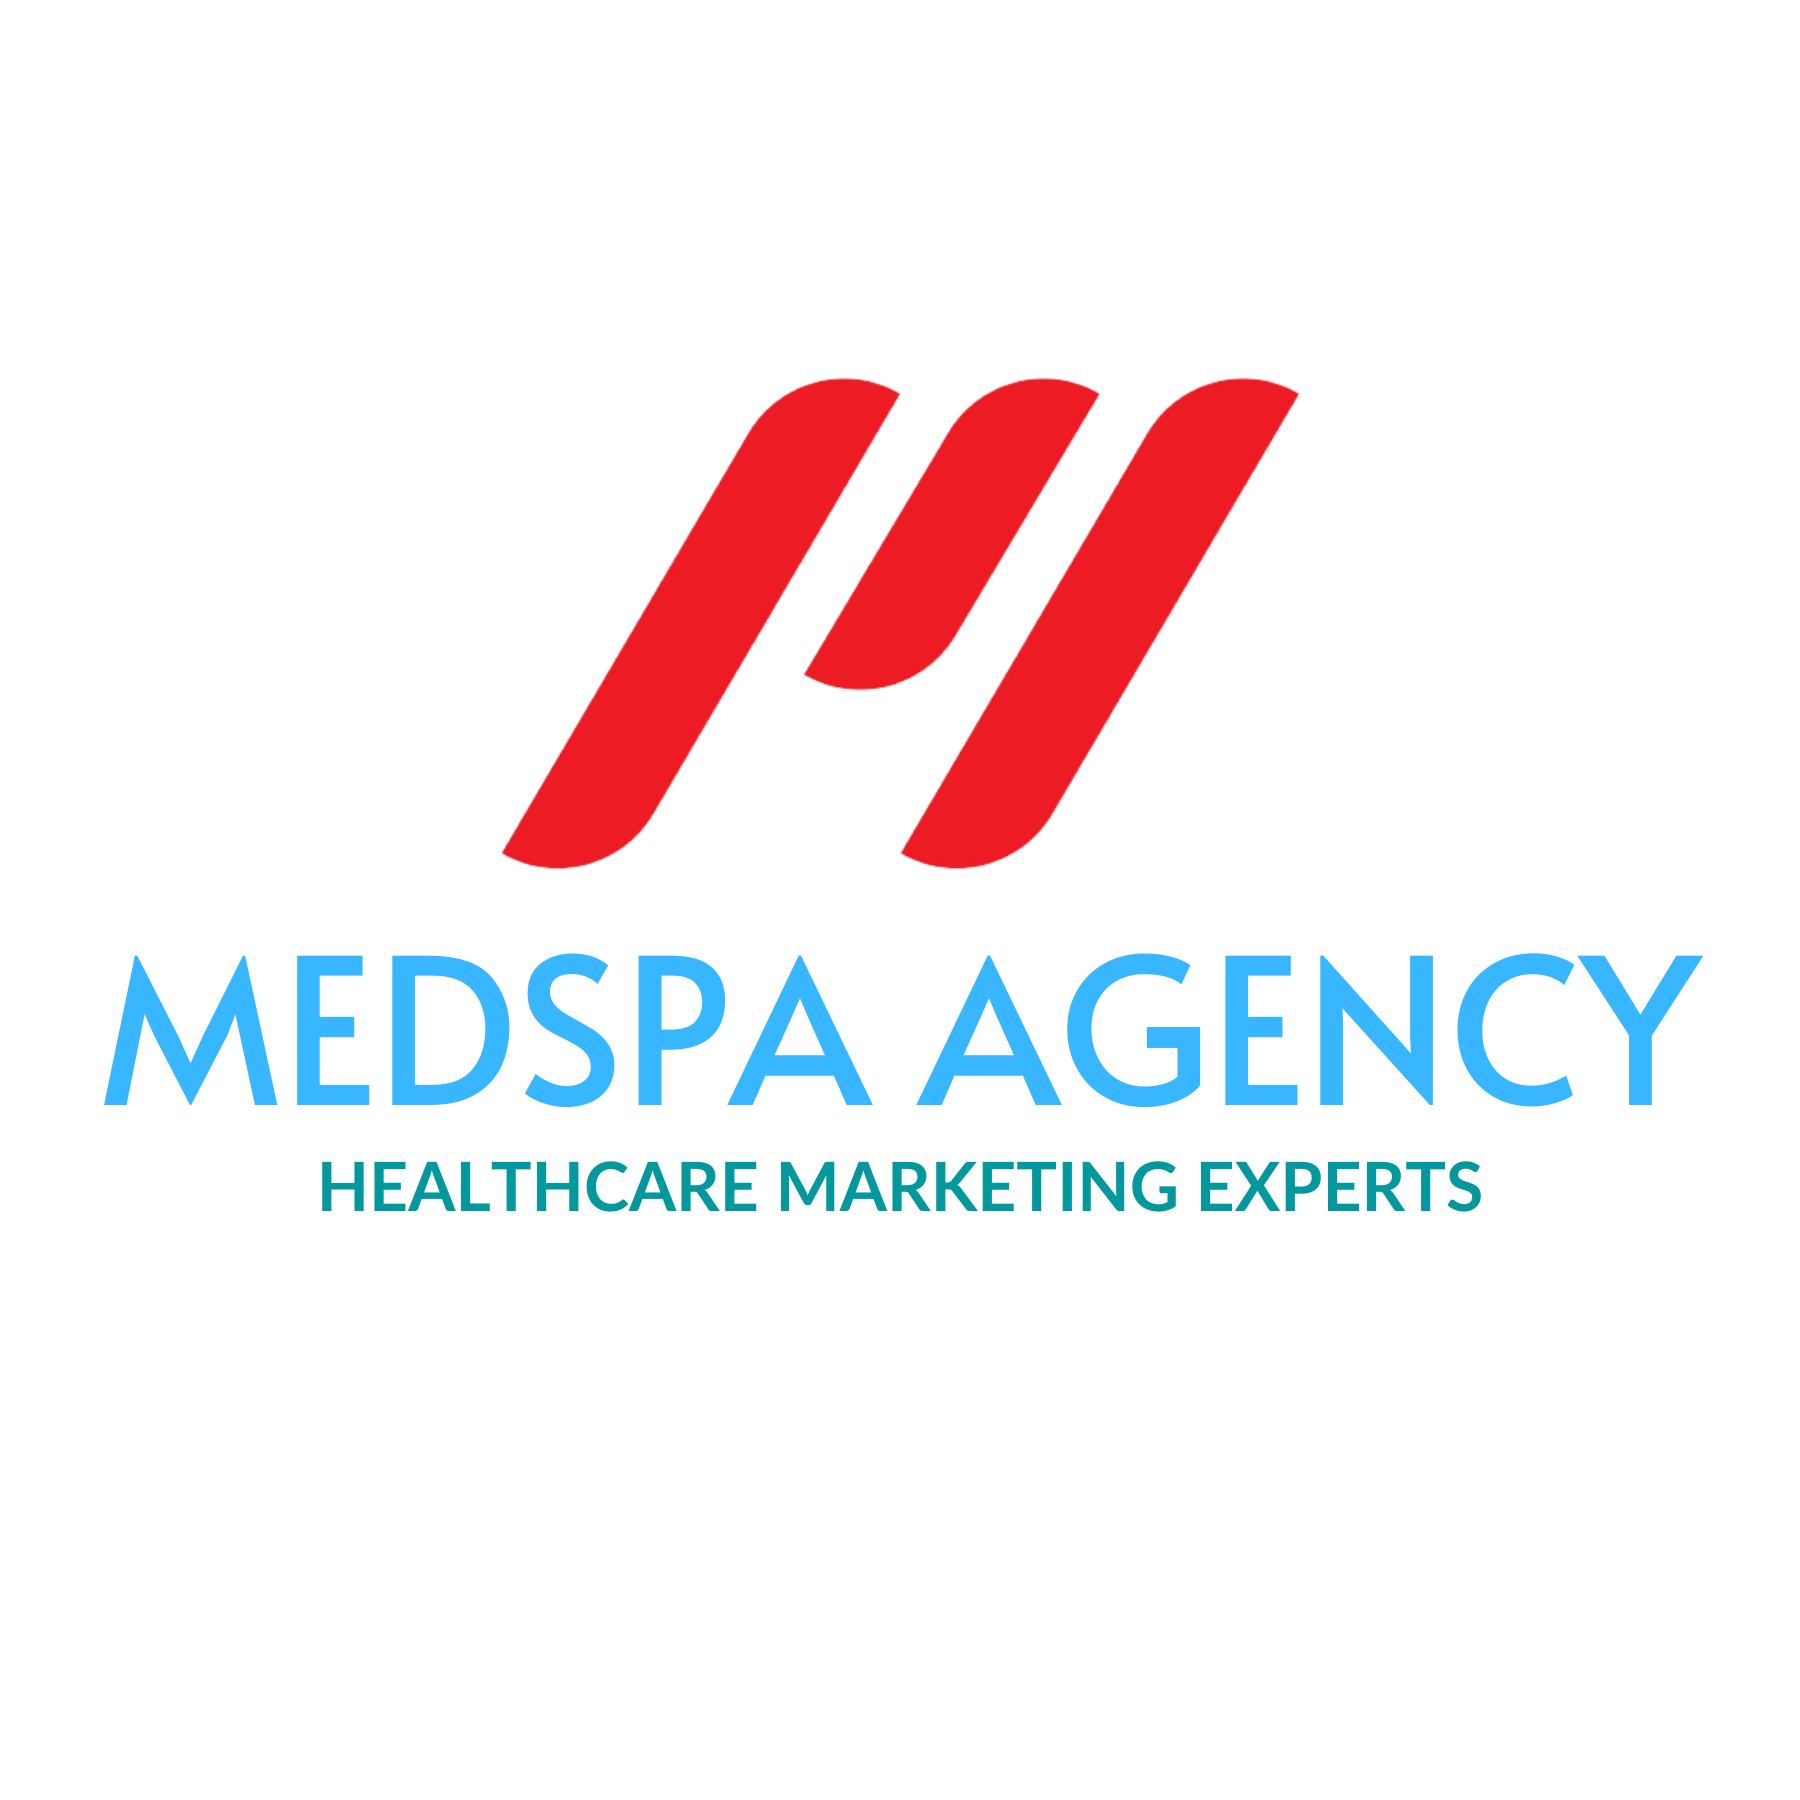 MedSpa Marketing Agency Helps Medspa Businesses Cope With Dwindling Sales With Digital Marketing